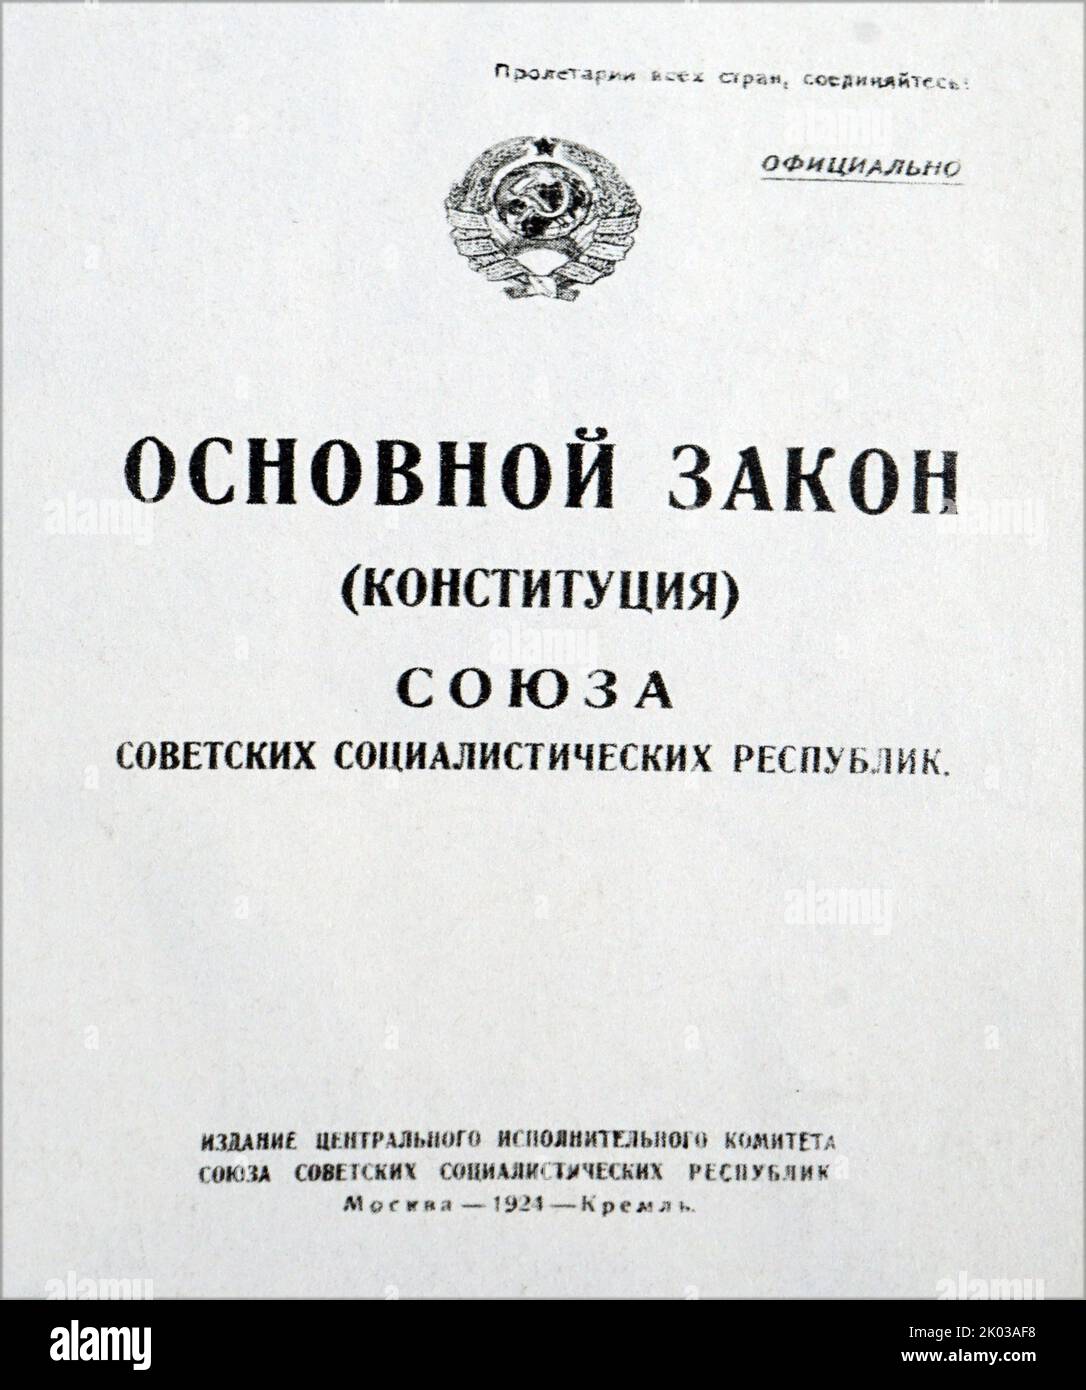 La Loi fondamentale (Constitution) de l'URSS. Publié par le Comité exécutif central de l'URSS. Moscou, 1924 ans, le Kremlin. Banque D'Images